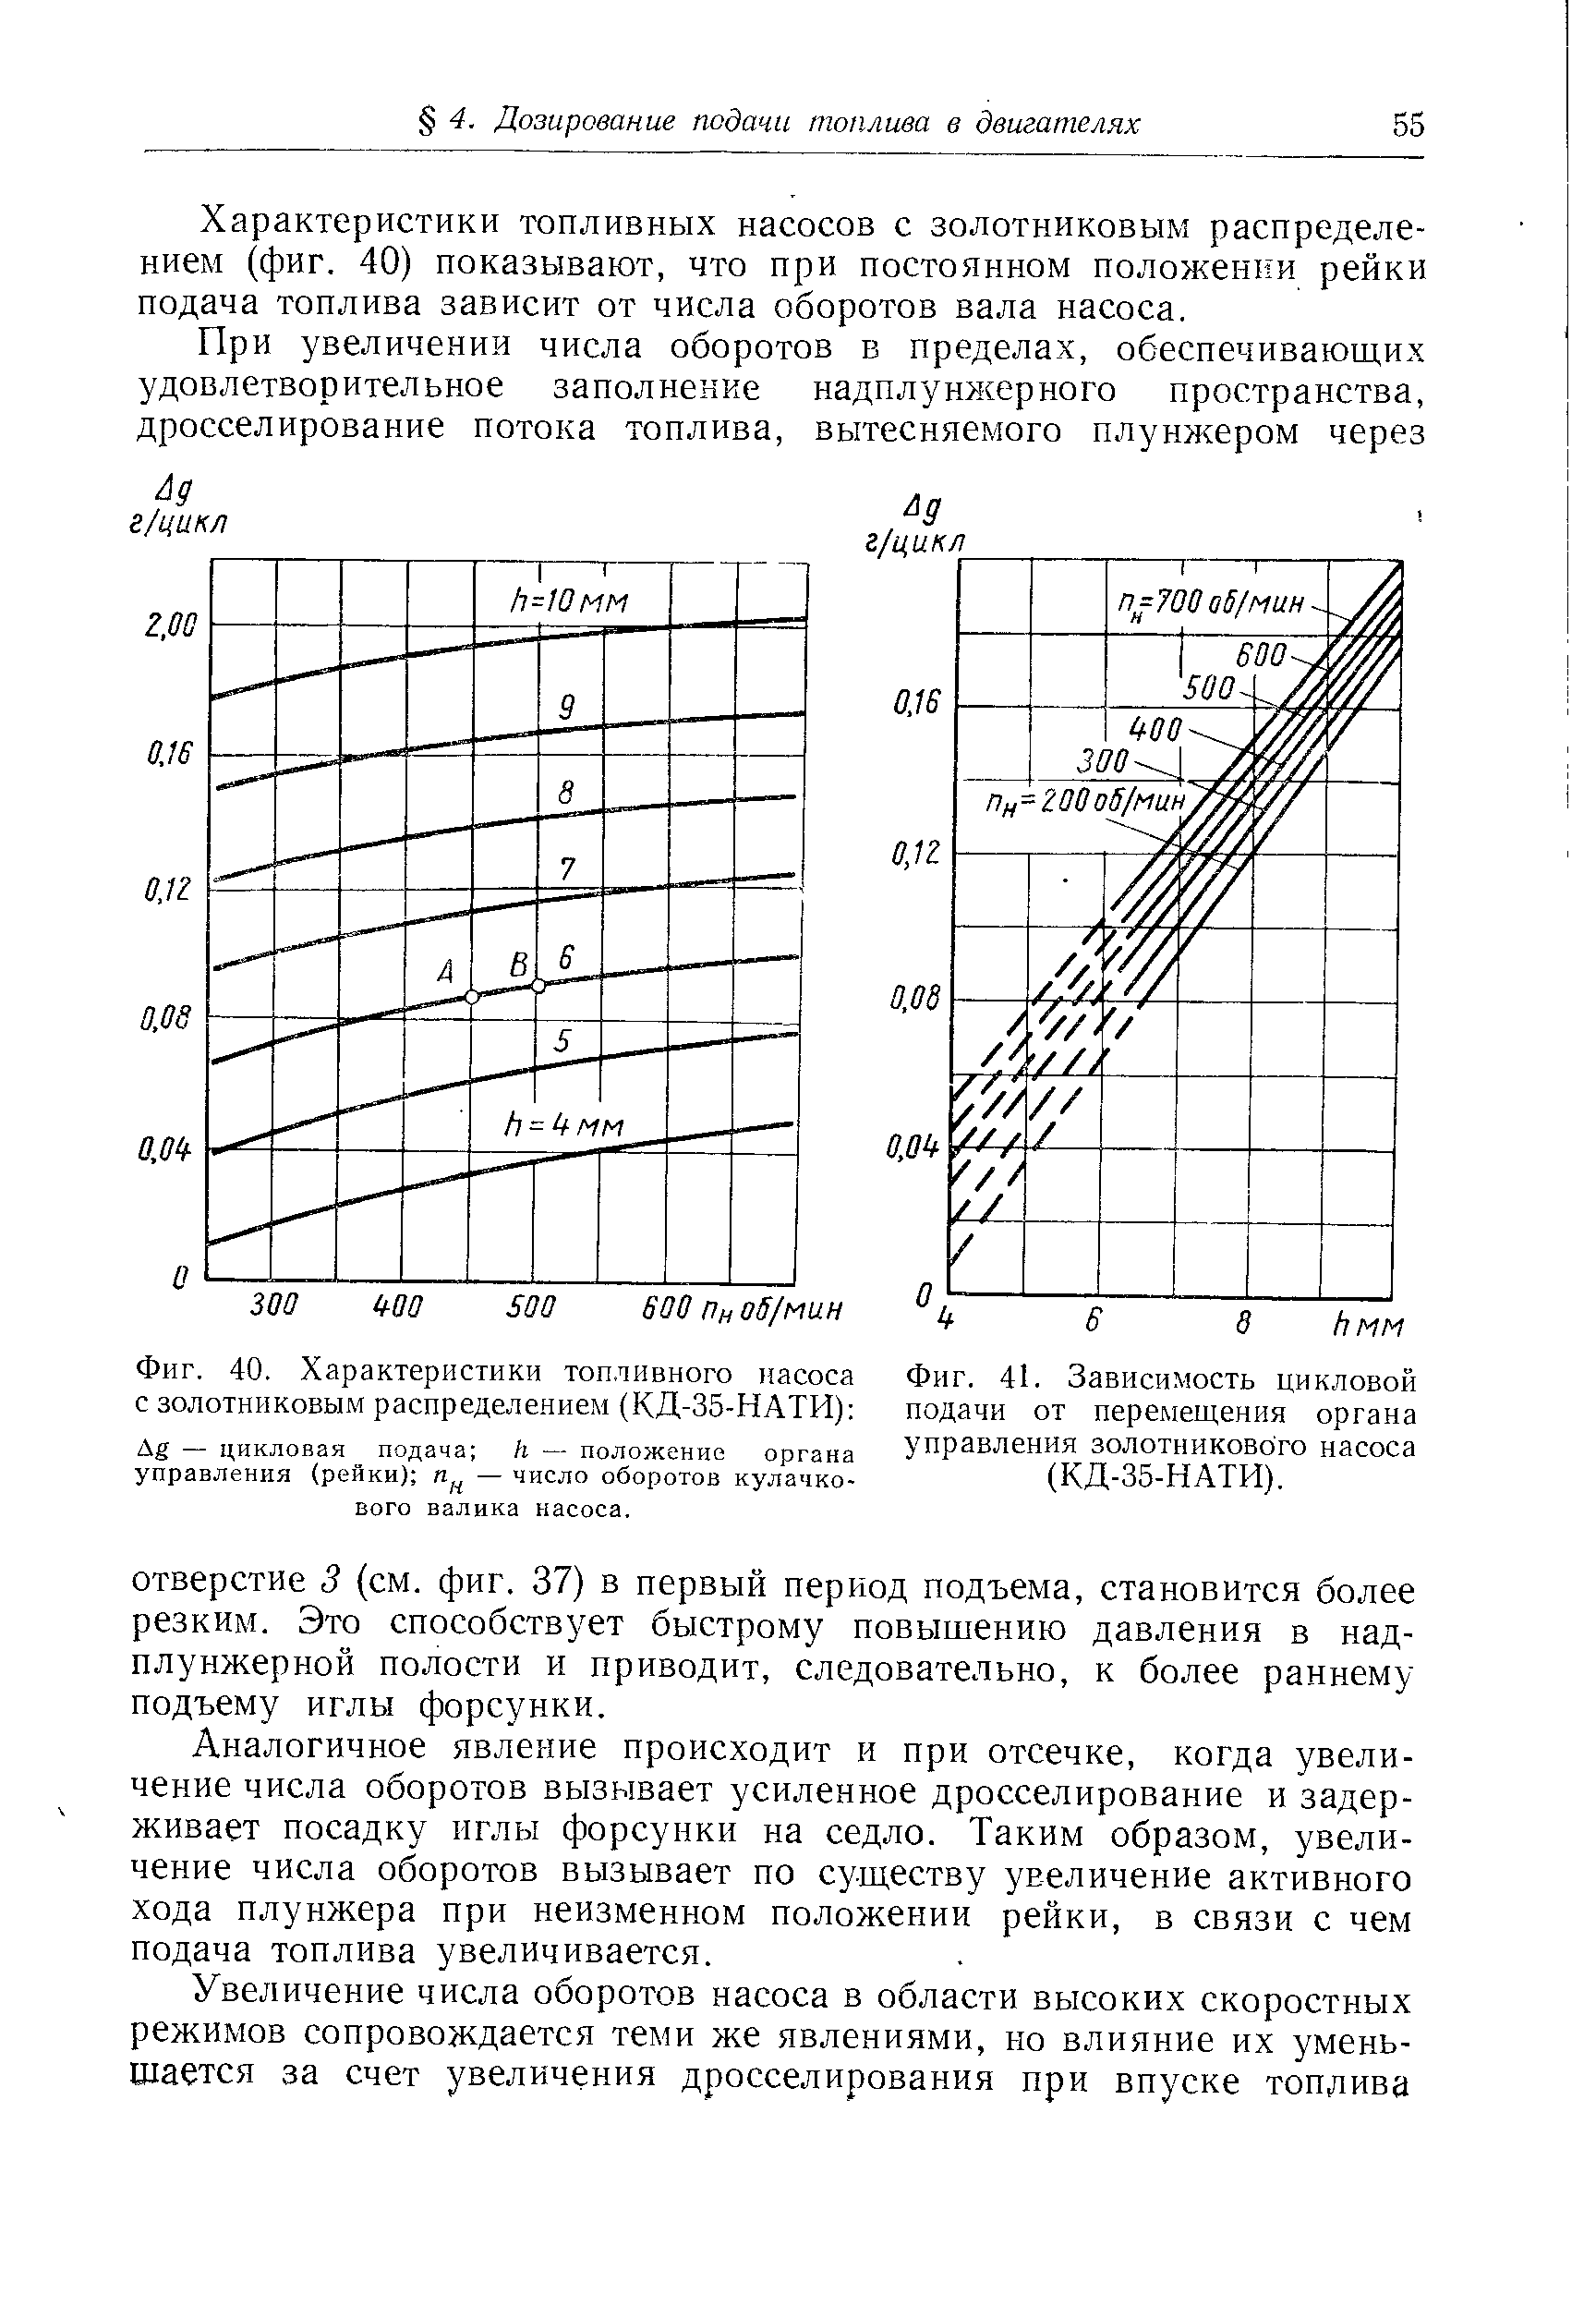 Фиг. 40. Характеристики топливного насоса с золотниковым распределением (КД-35-НАТИ) 
